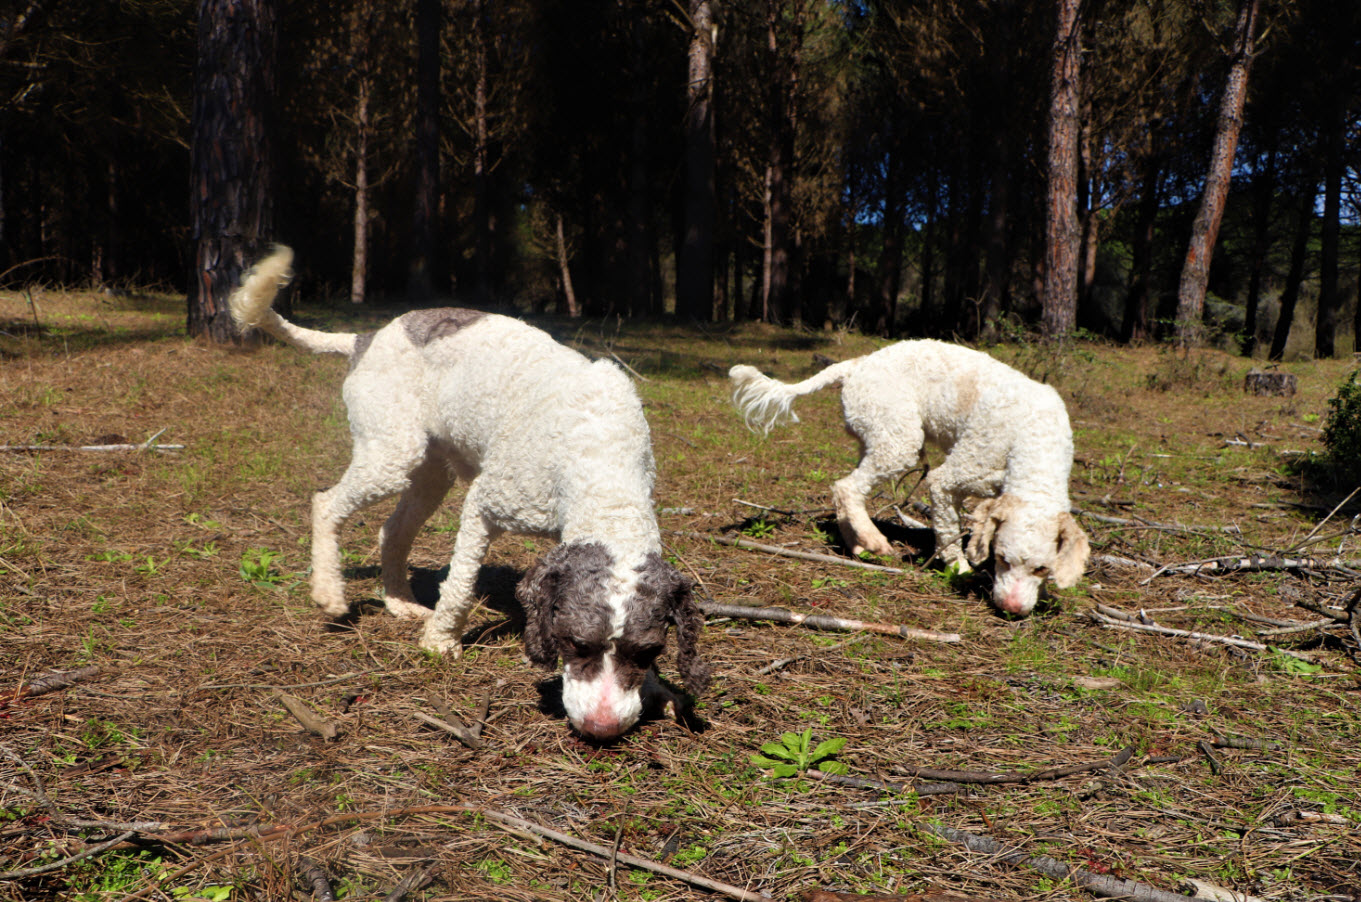 Dünyanın en pahalı mantarını özel eğitimli köpekler buluyor! Kilosu 1500 TL